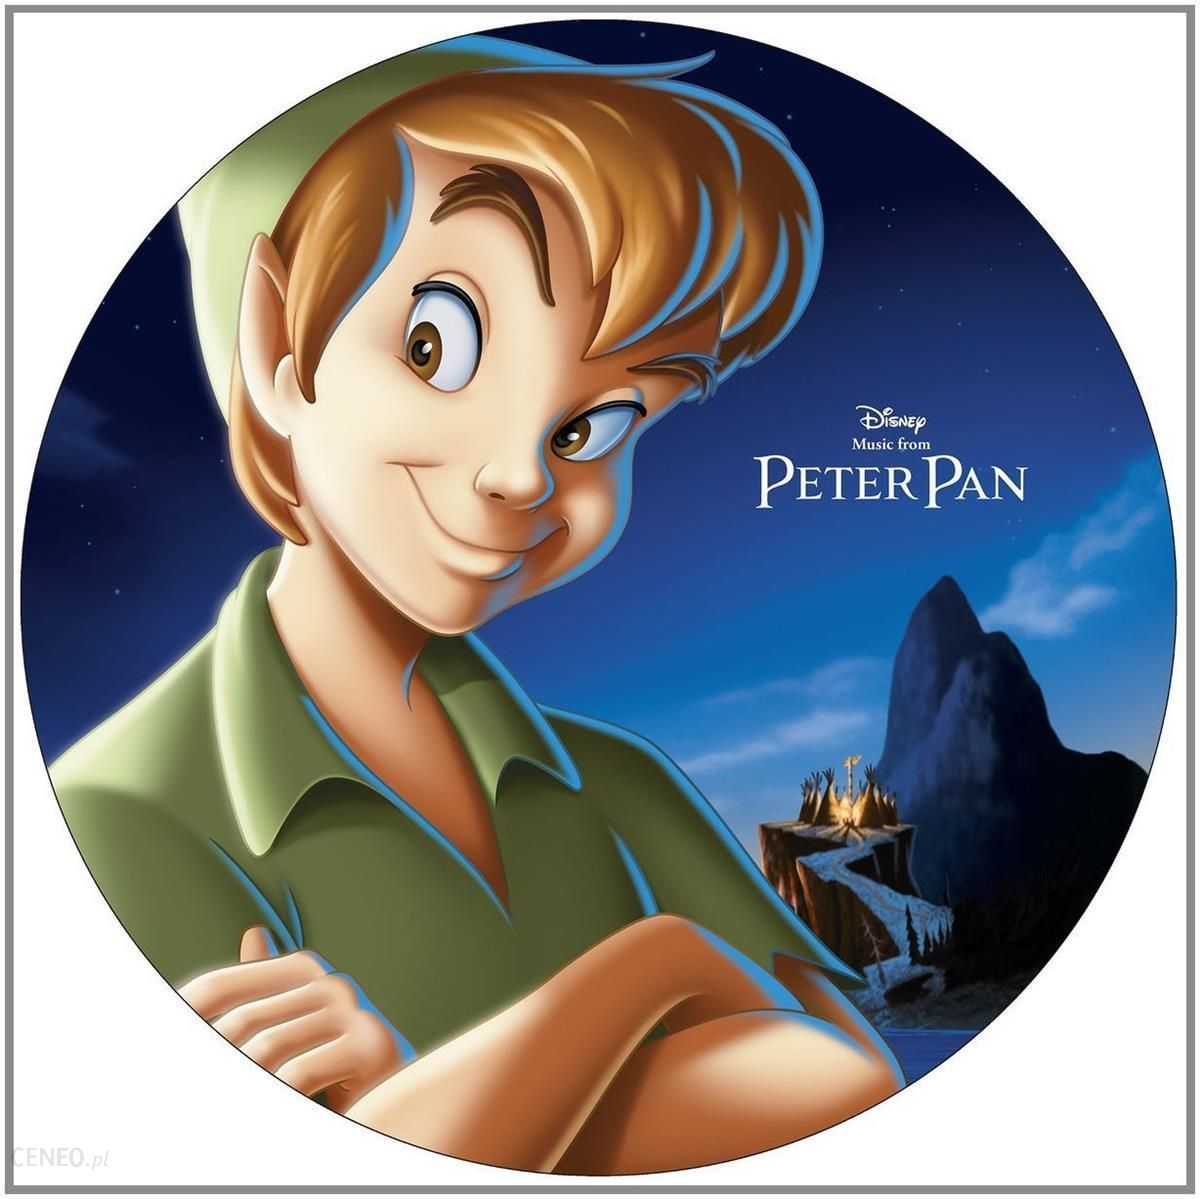 Саундтрек диснея. Peter Pan. Peter Pan Musical. Питер Пэн пластинка. Дисней музыка.